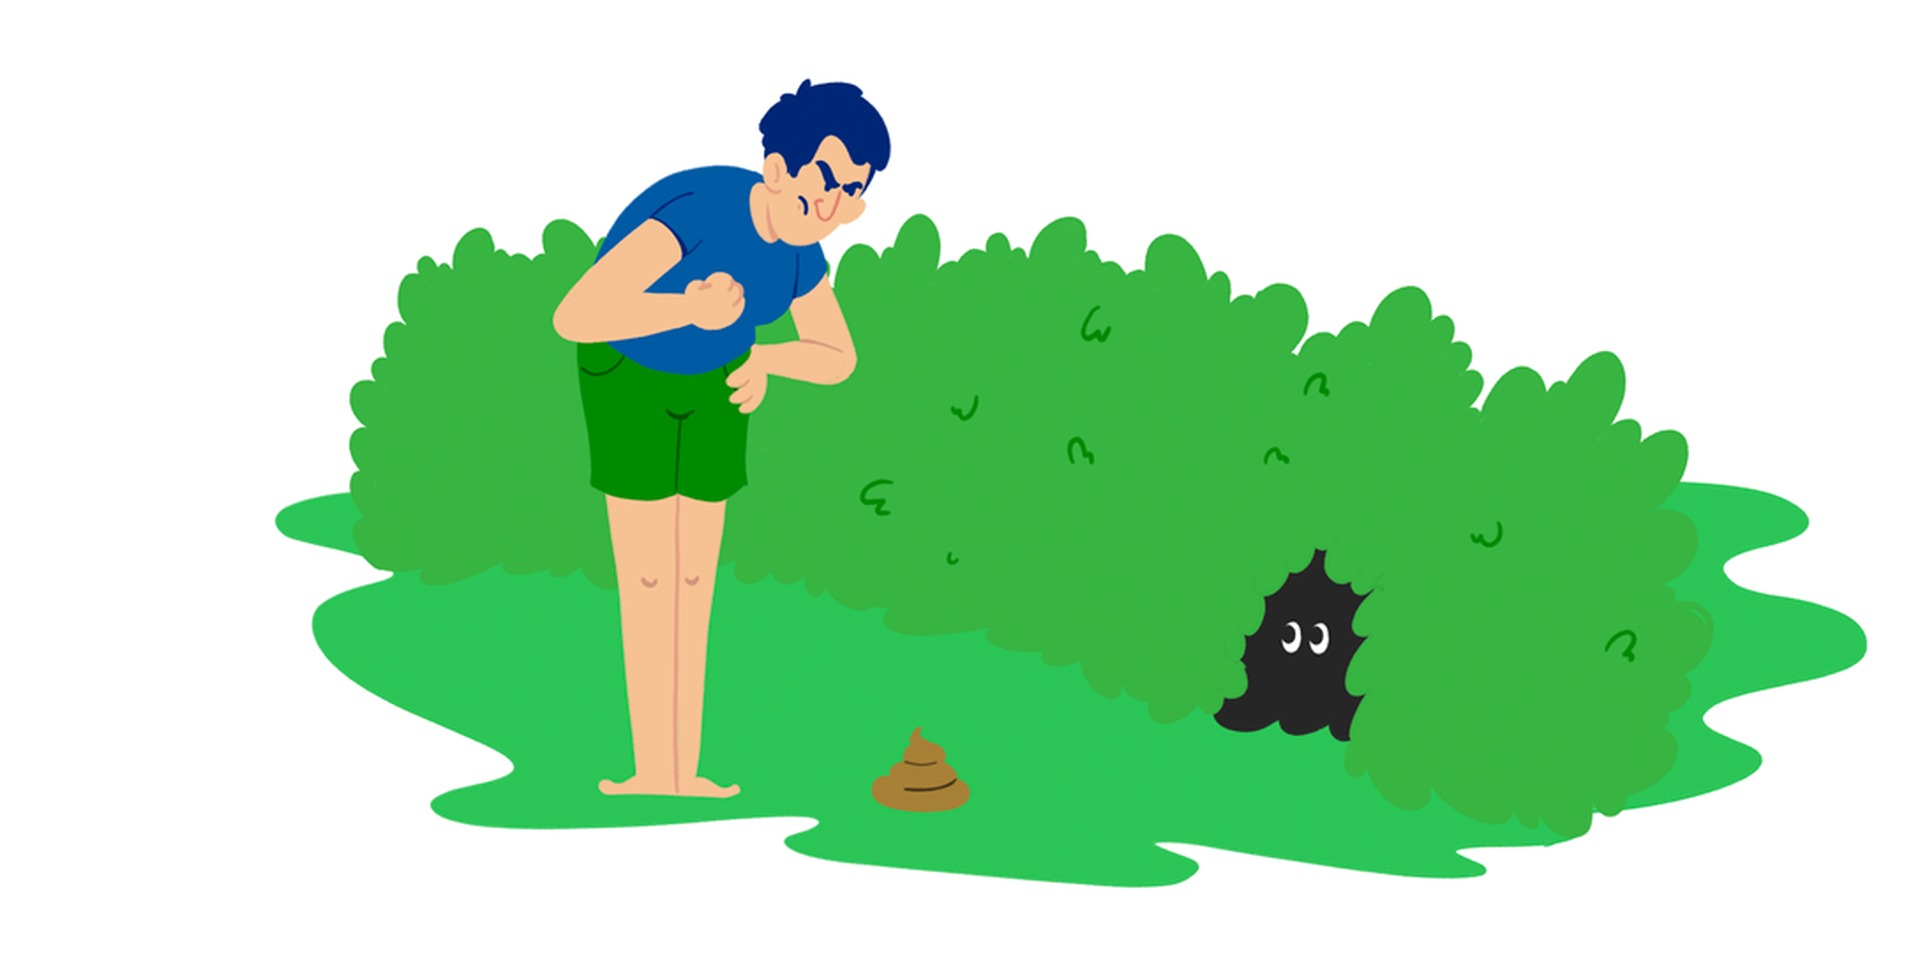 Sint mann ved hundeavføring foran en hekk, der en hund gjemmer seg. Illustrasjon.